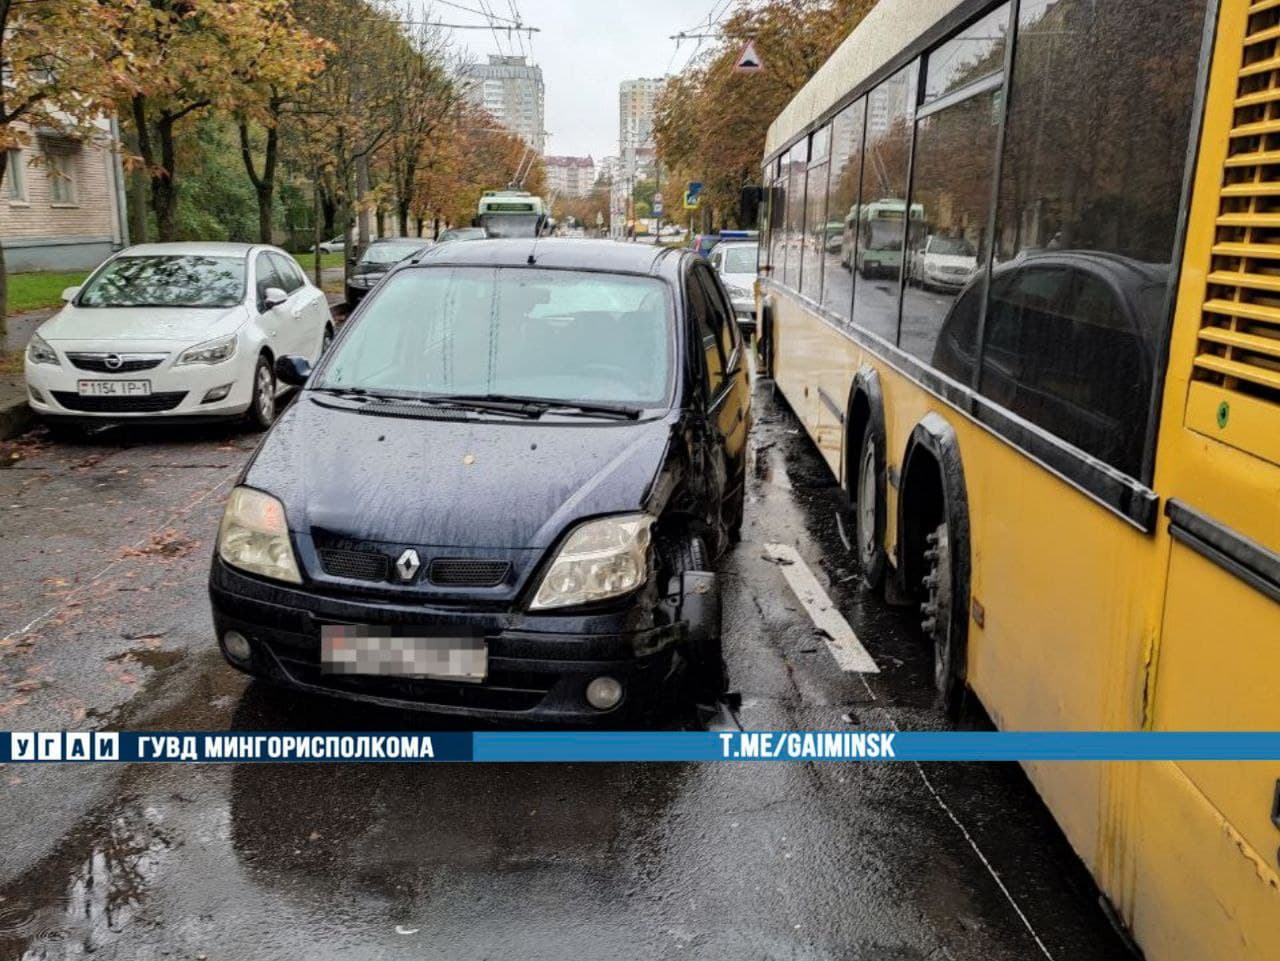 Пьяный водитель легковушки в Минске врезался в пассажирский автобус